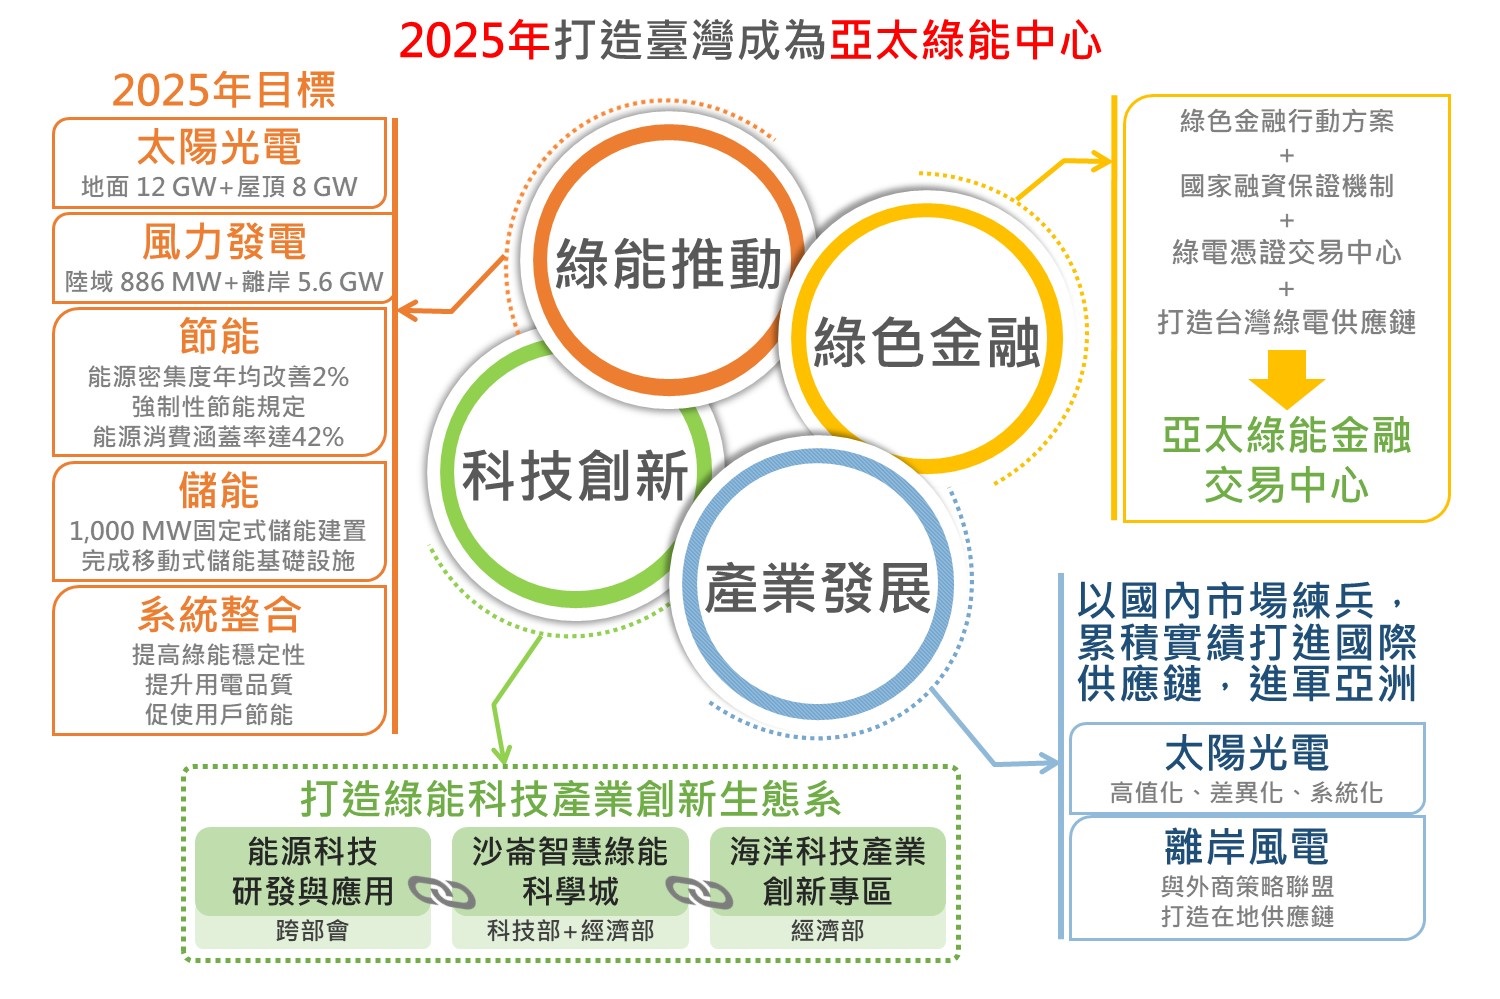 2025年打造臺灣成為亞太綠能中心